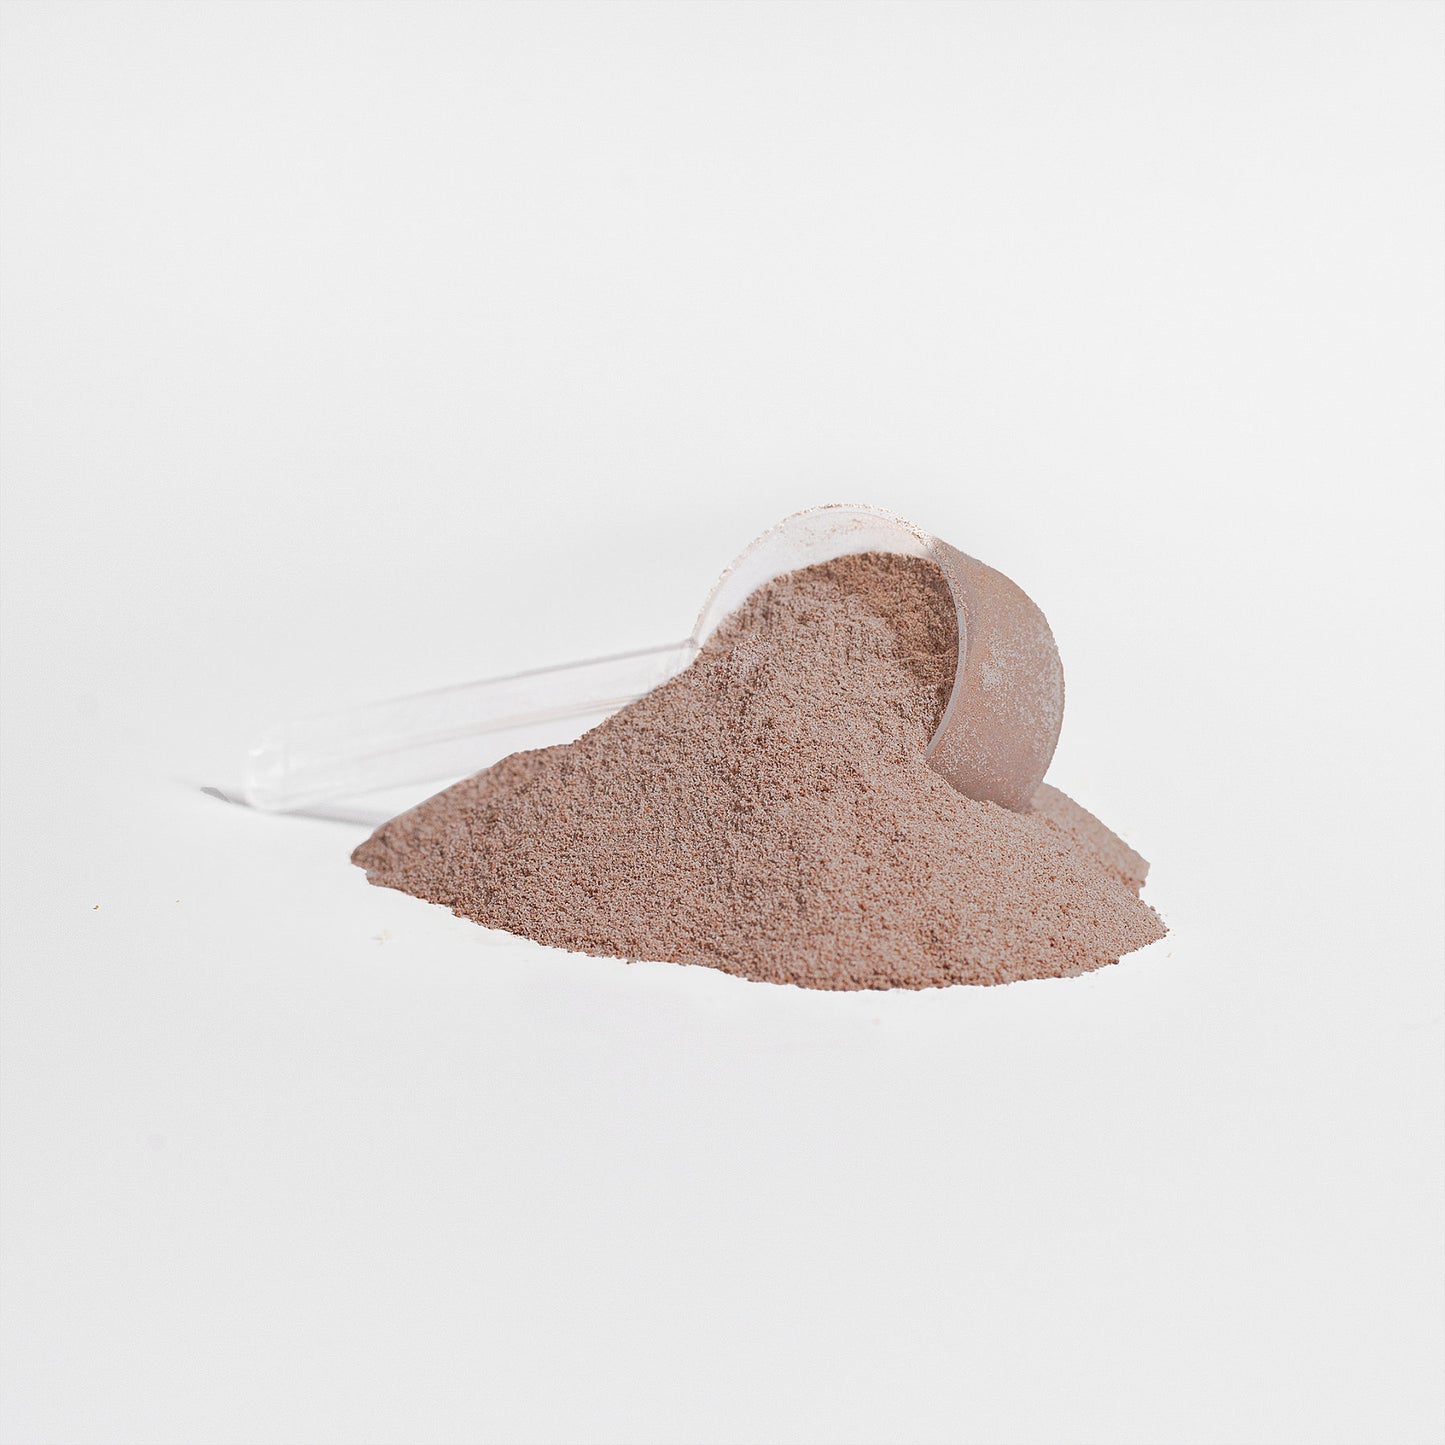 Protéine de lactosérum (saveur chocolat)